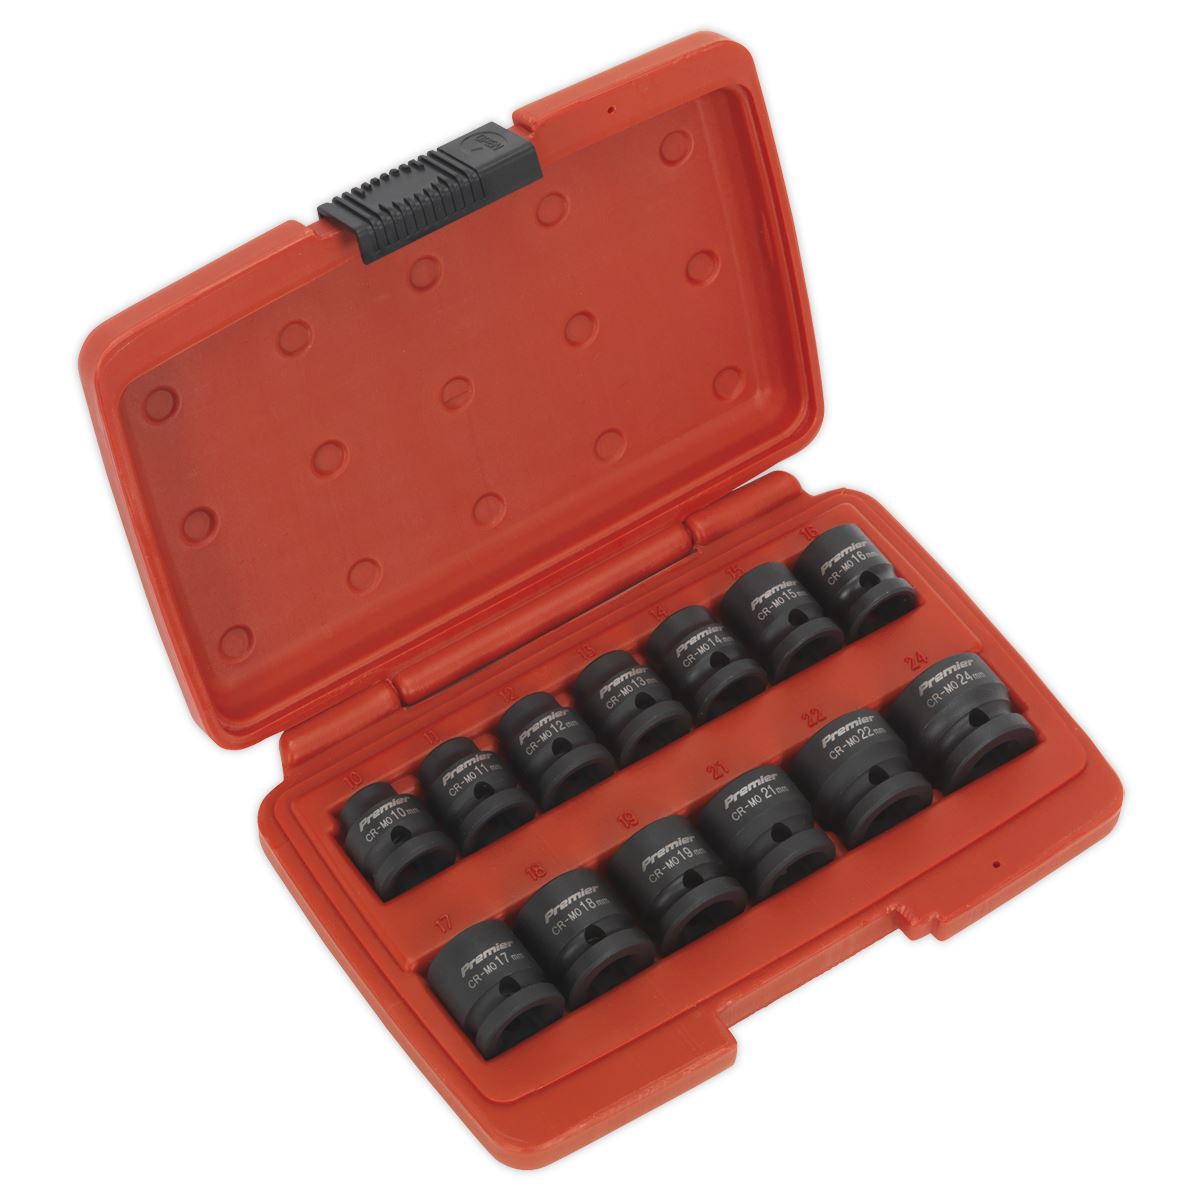 Sealey Premier 13 Piece 1/2" Drive Low Profile Impact Socket Set 10-24mm WallDrive